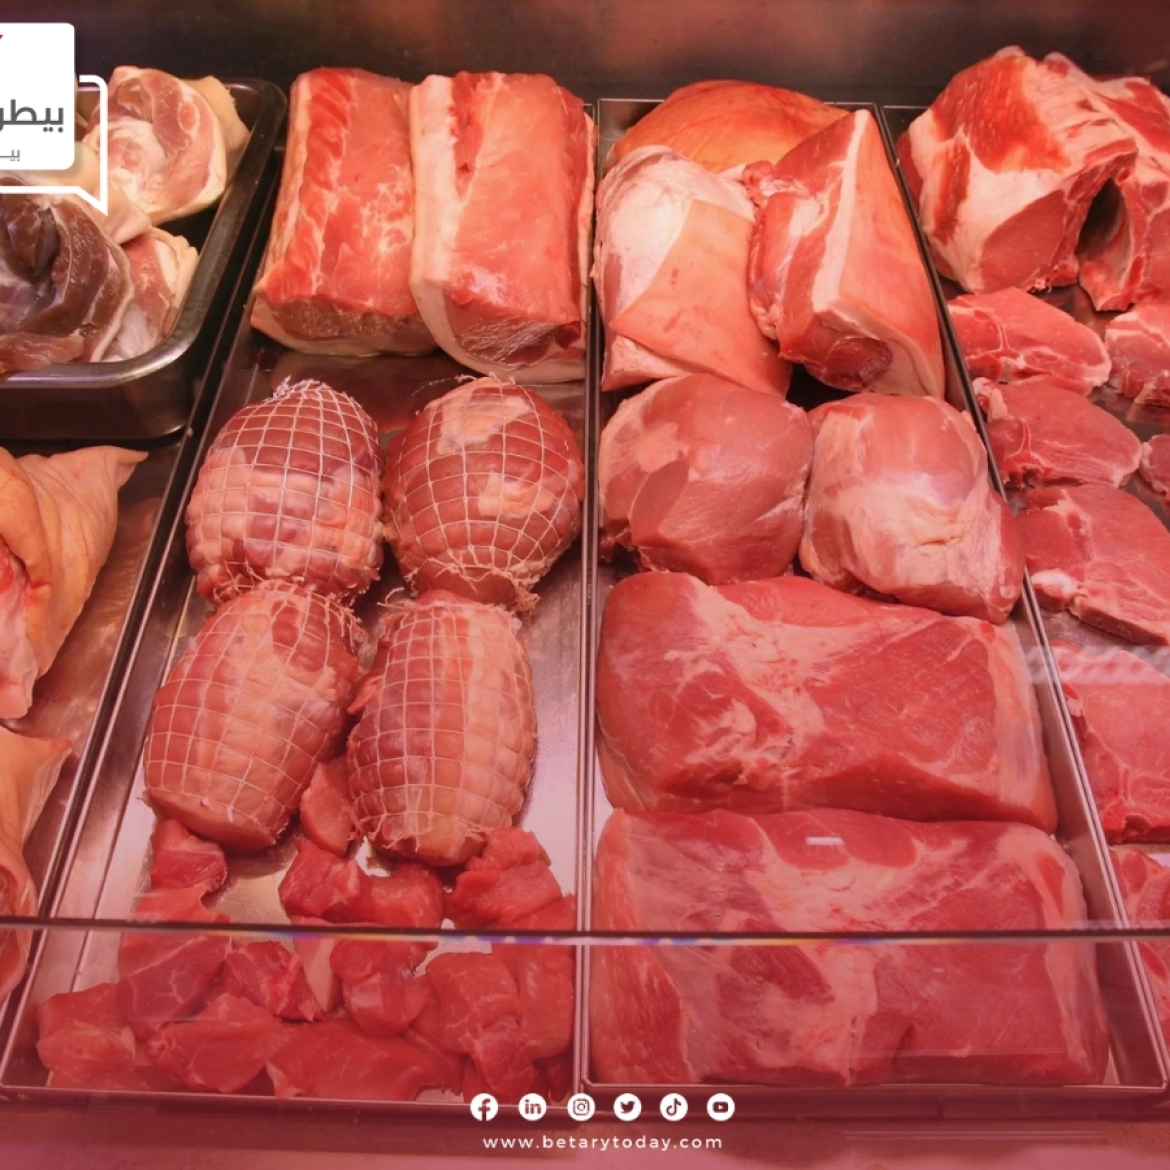 منافسة قوية بين اللحوم الحمراء البلدي والمستوردة اليوم الأحد 24 مارس في الأسواق